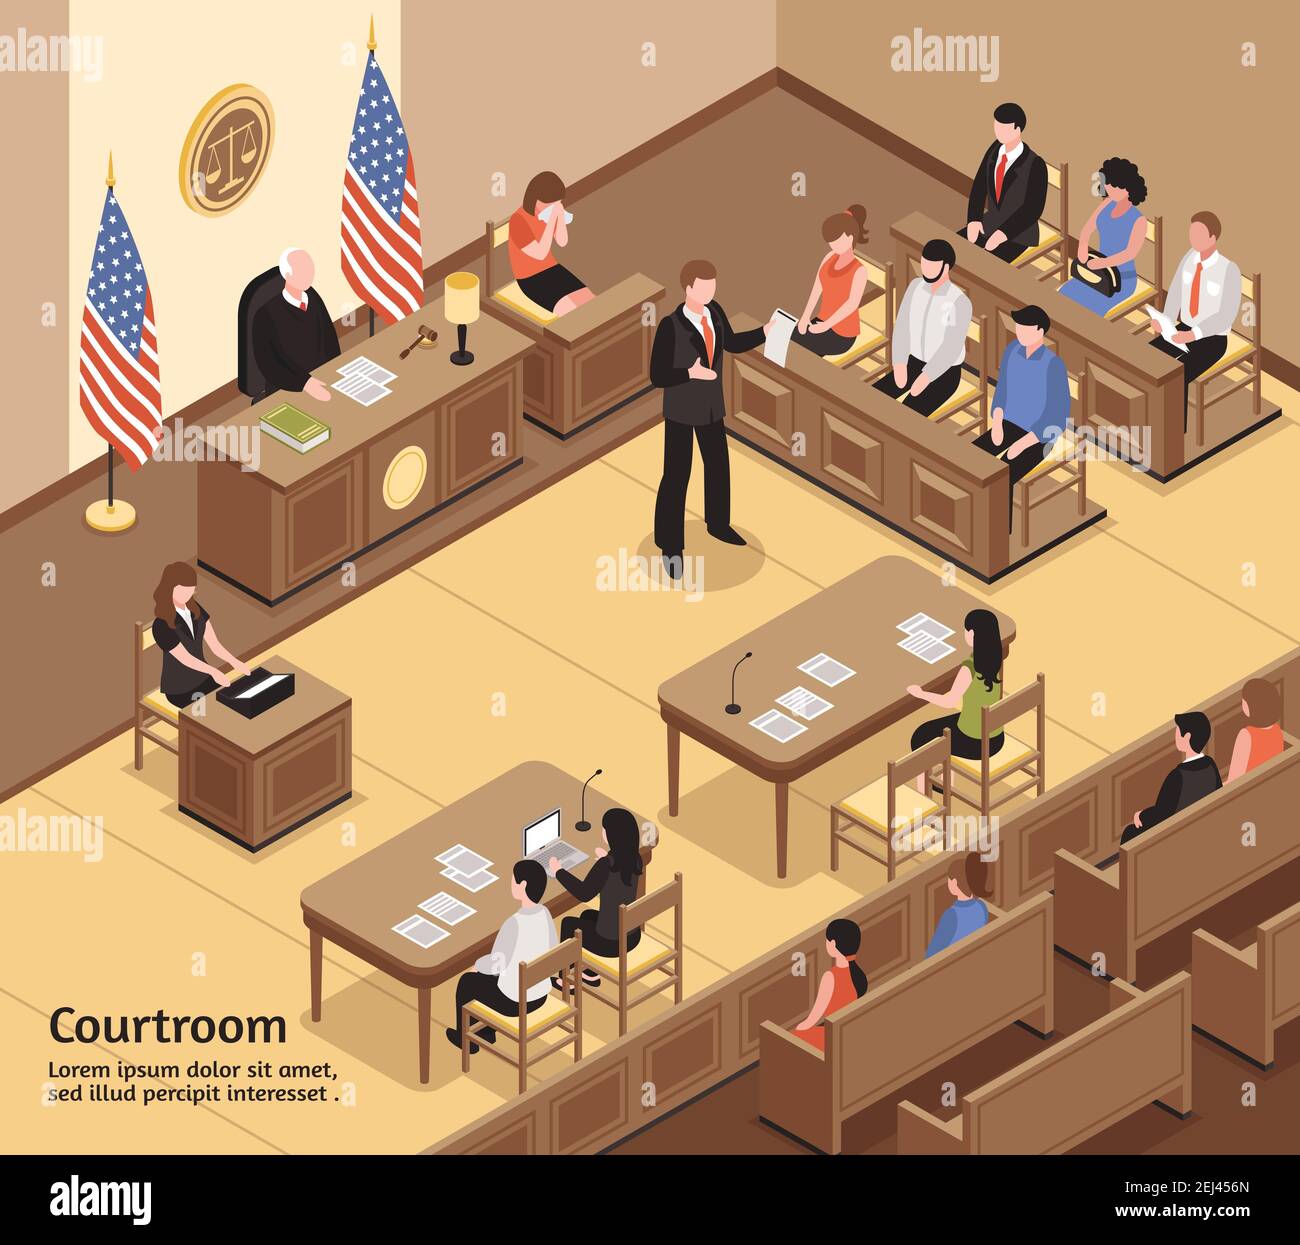 Judikative isometrische Vektor Illustration mit Jury Angeklagte Anwalt Schreiber Zuschauer Figuren im Gerichtssaal Stock Vektor